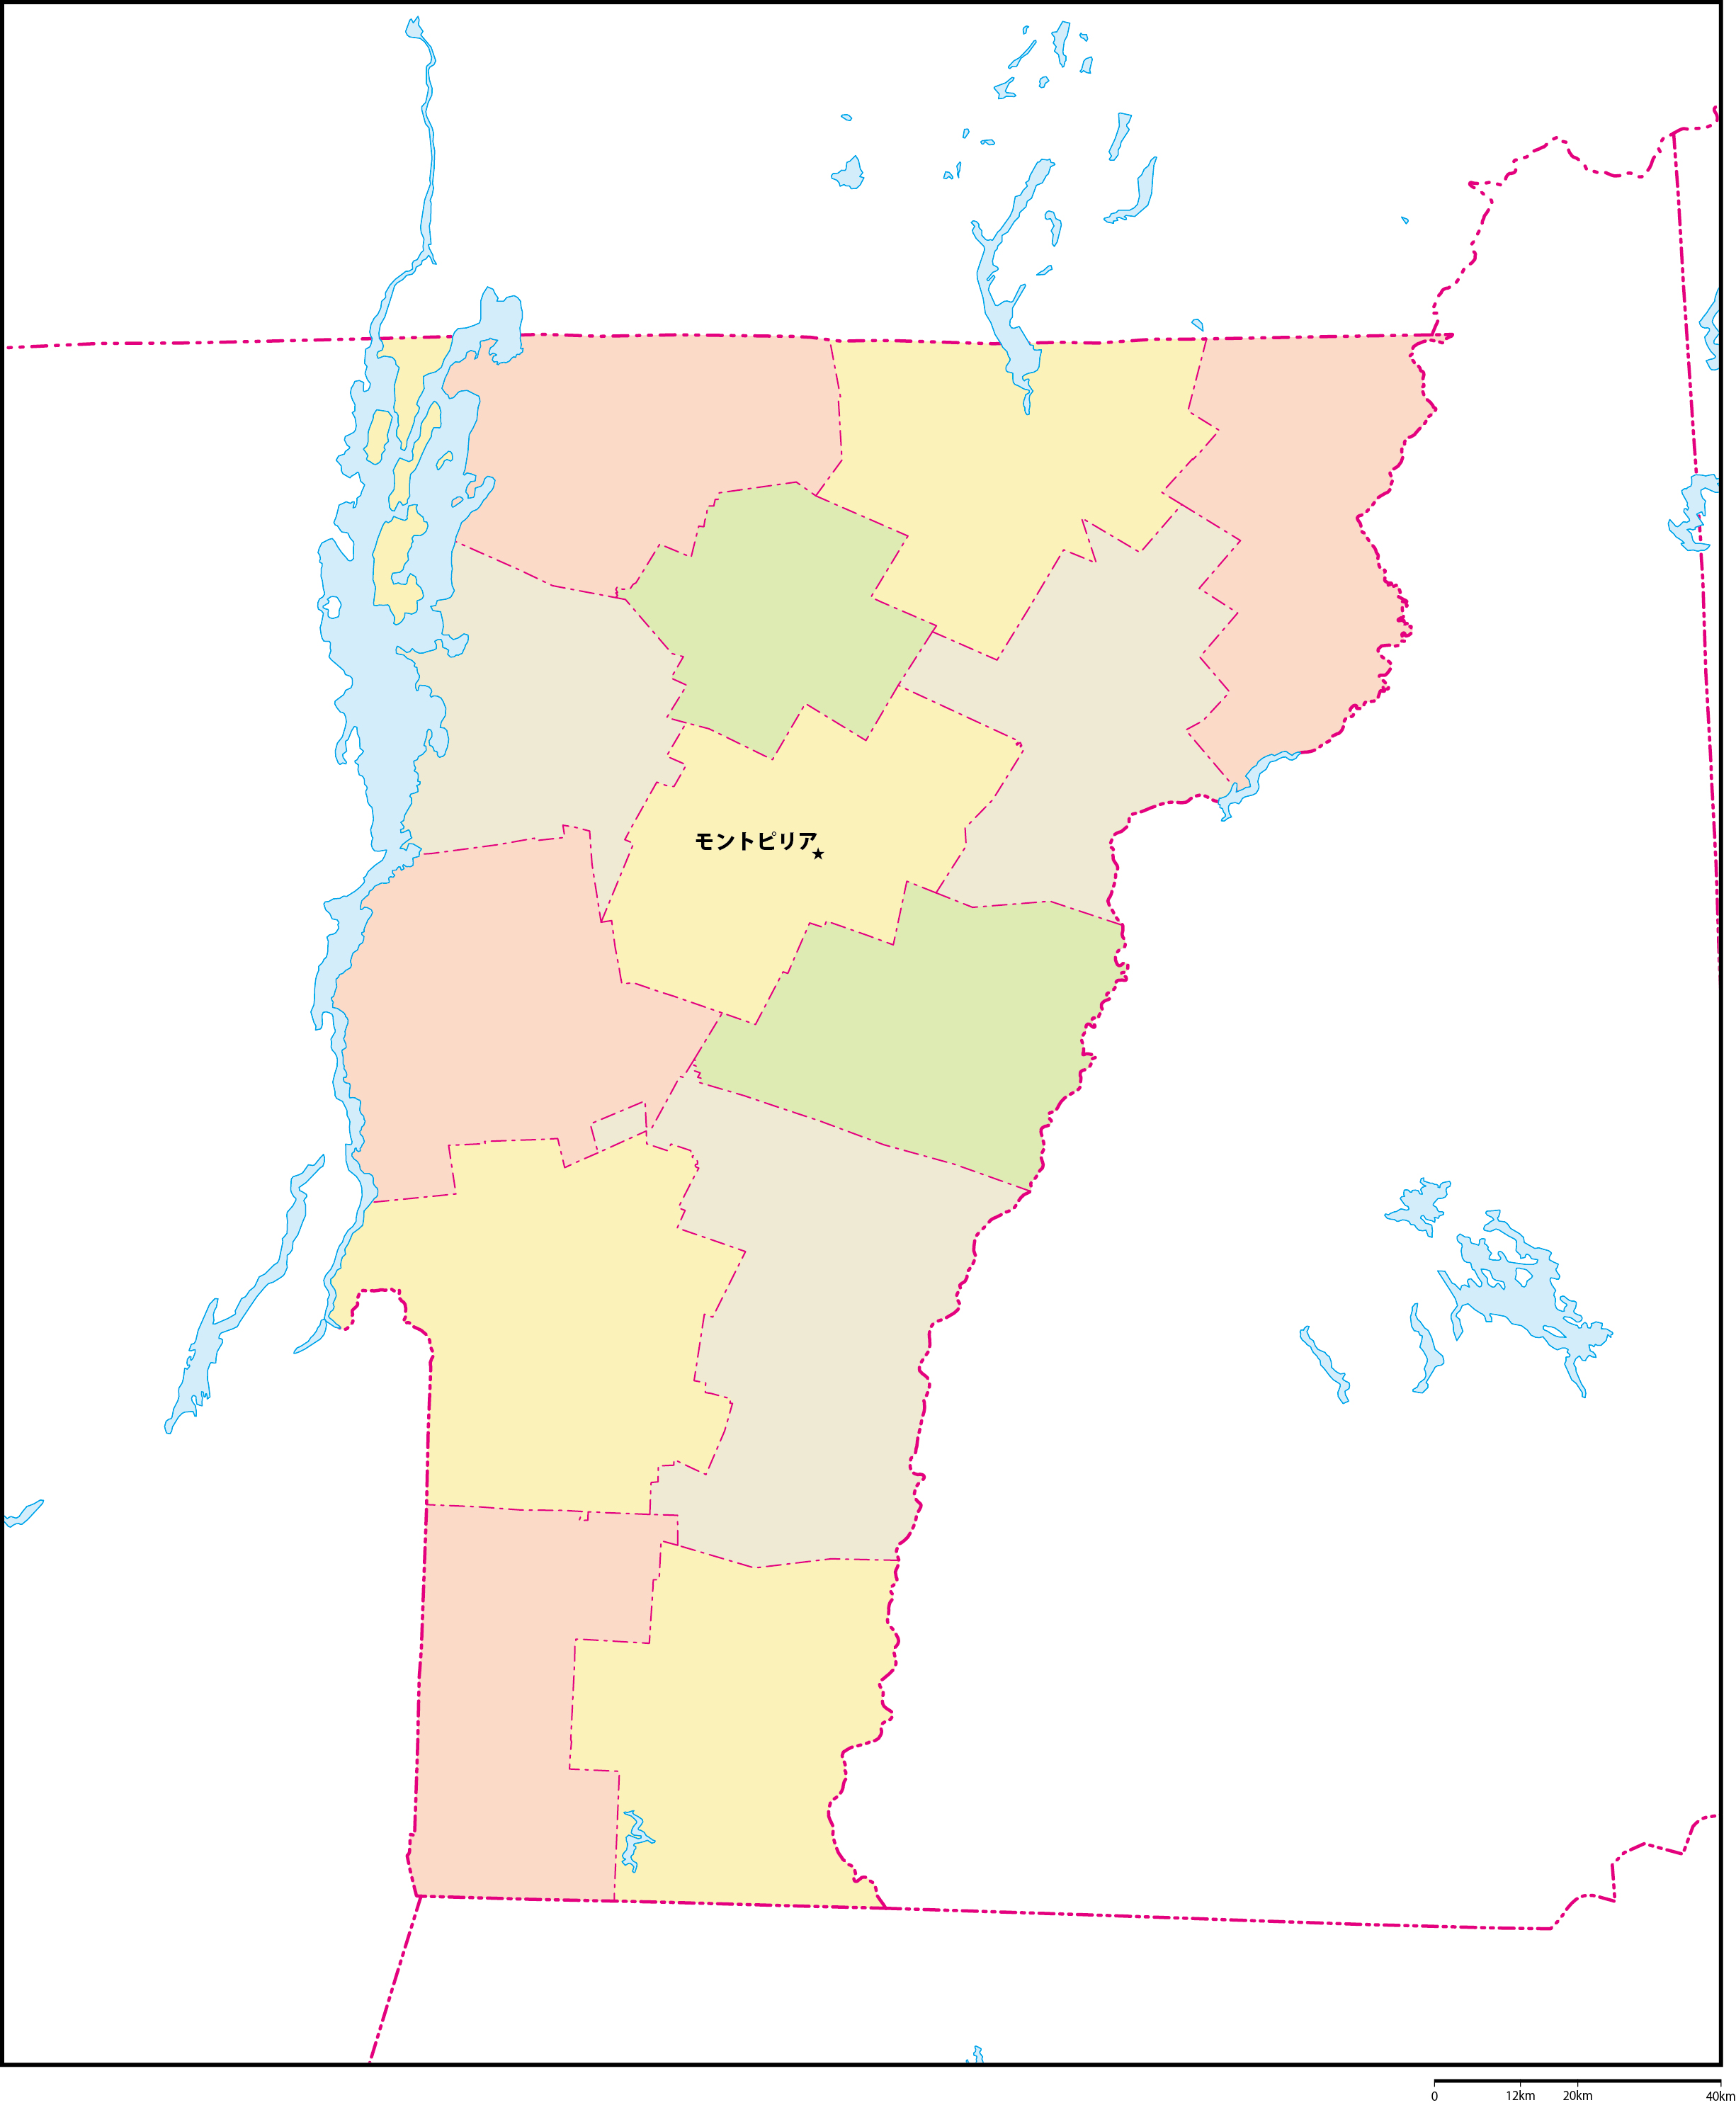 バーモント州郡色分け地図州都あり(日本語)フリーデータの画像